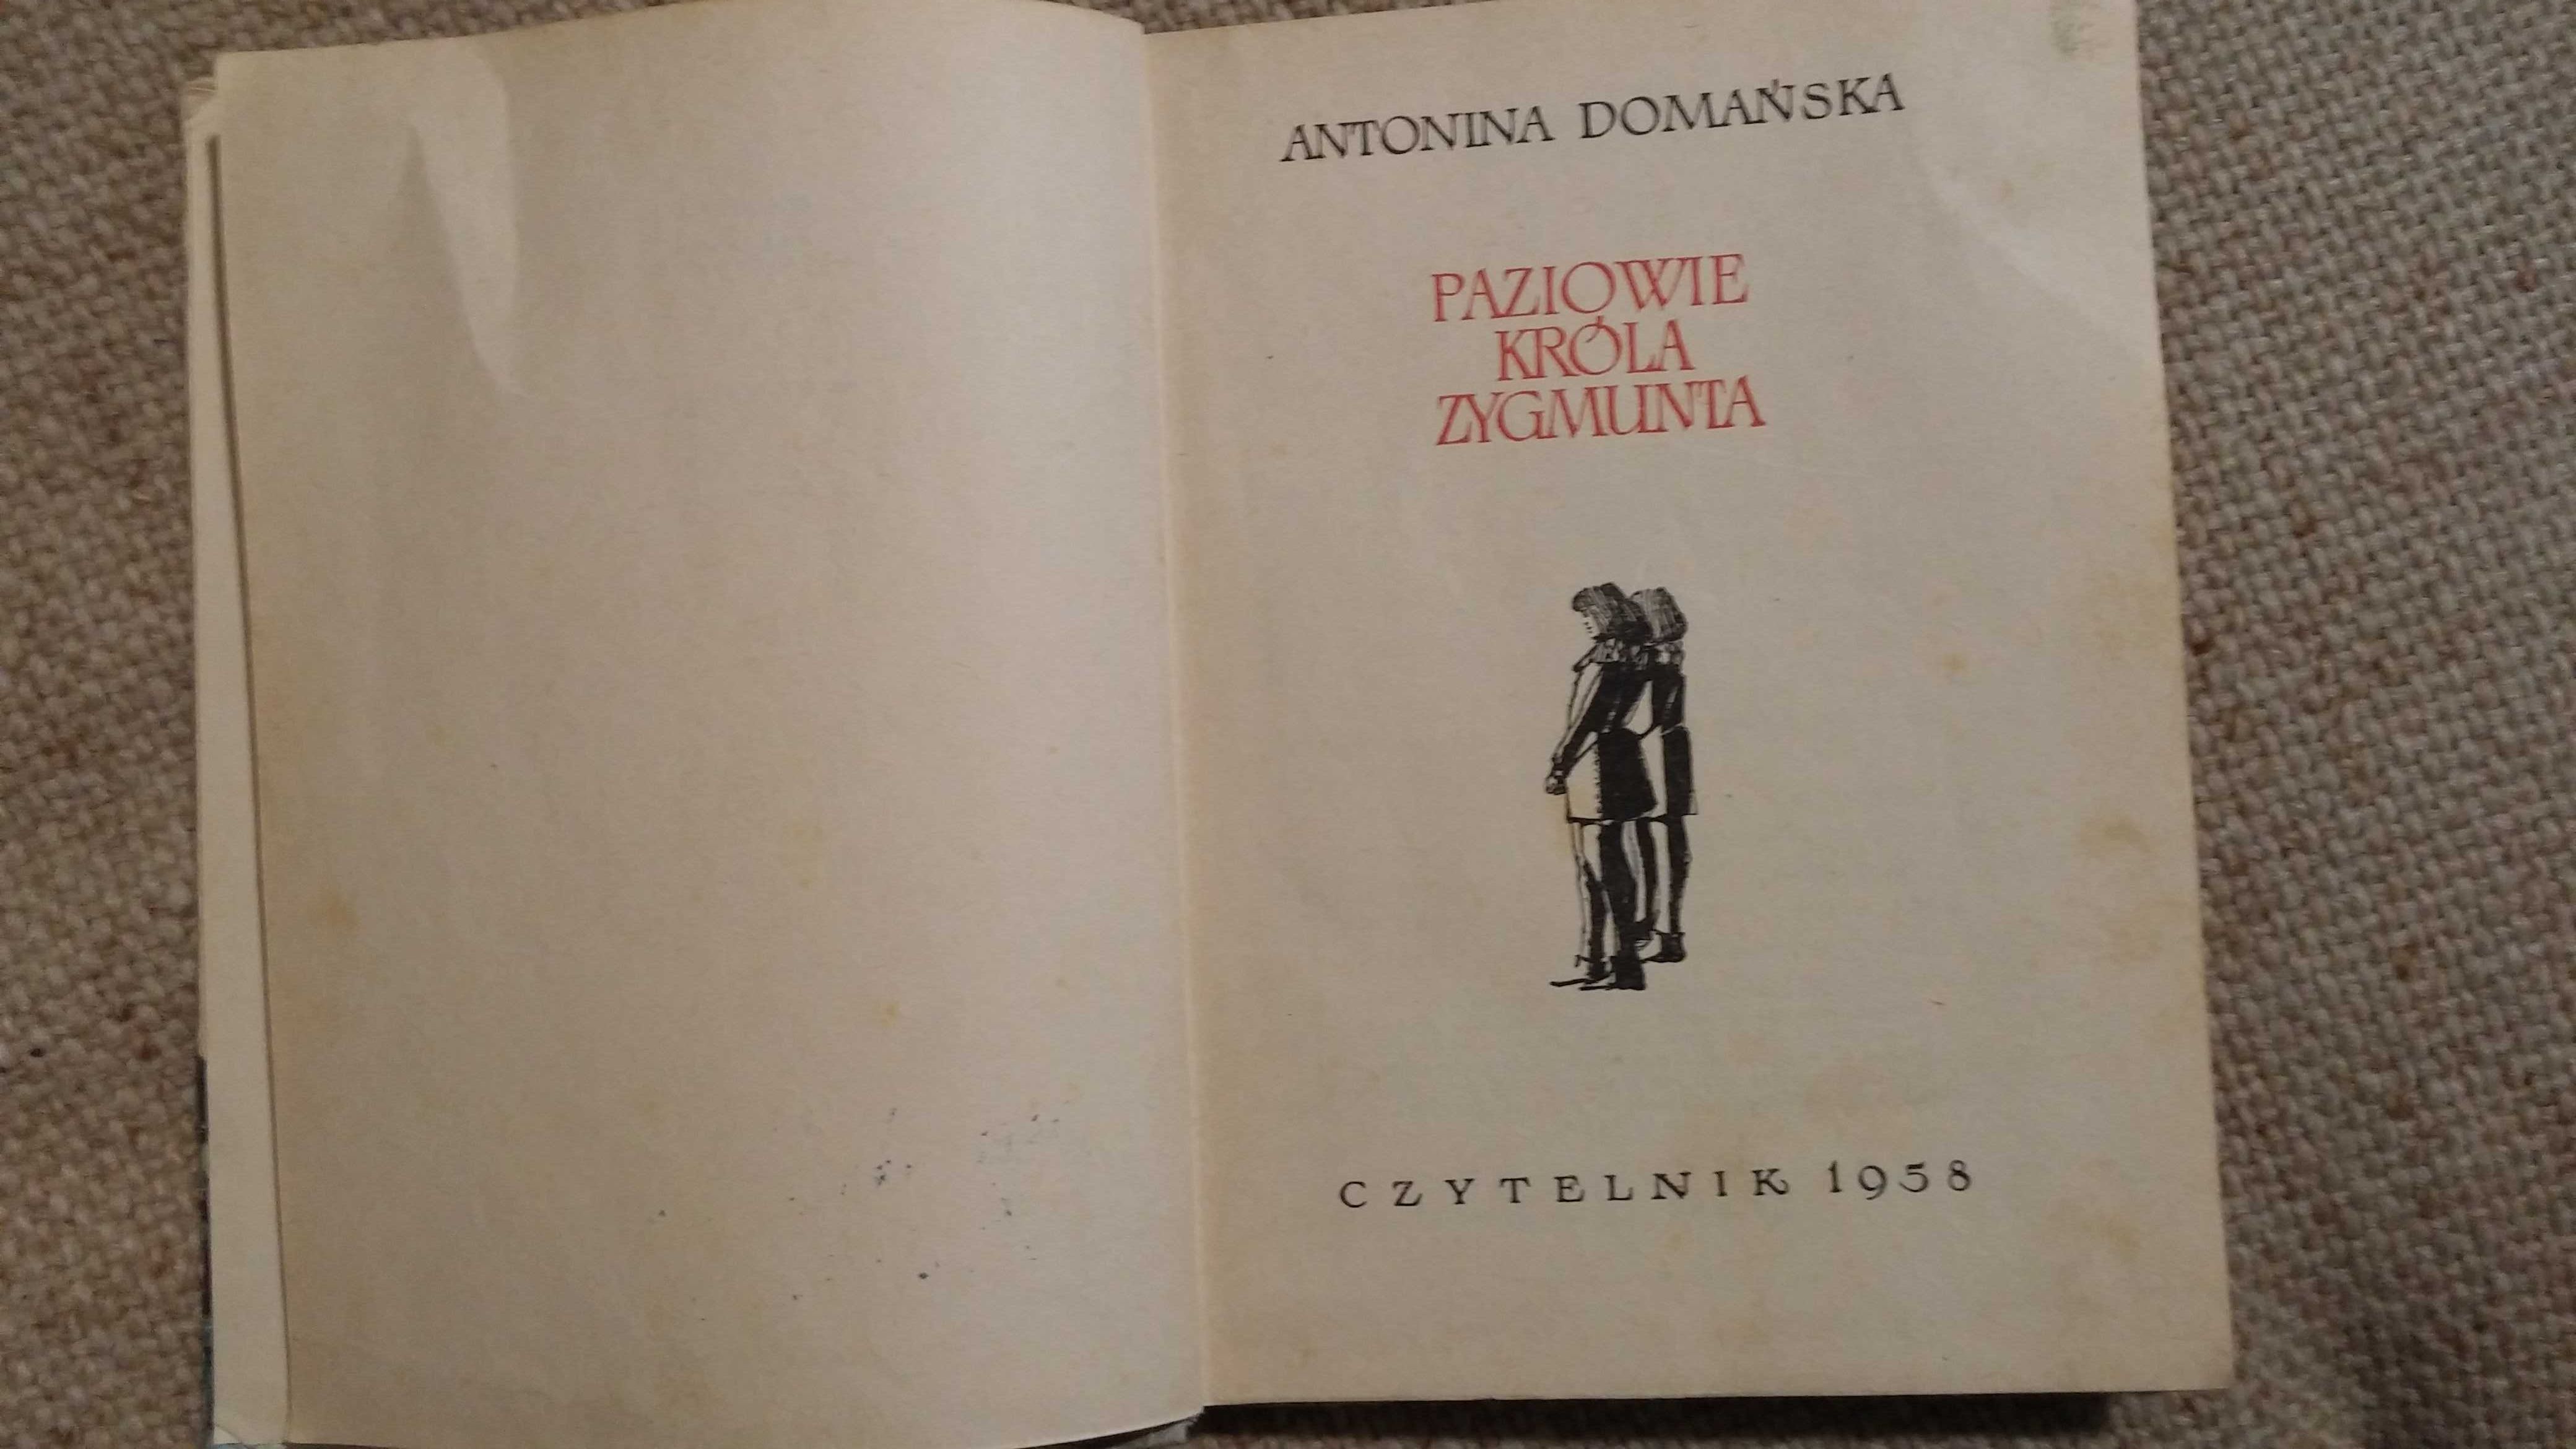 Paziowie króla Zygmunta Domańska Antonina wyd 1958r